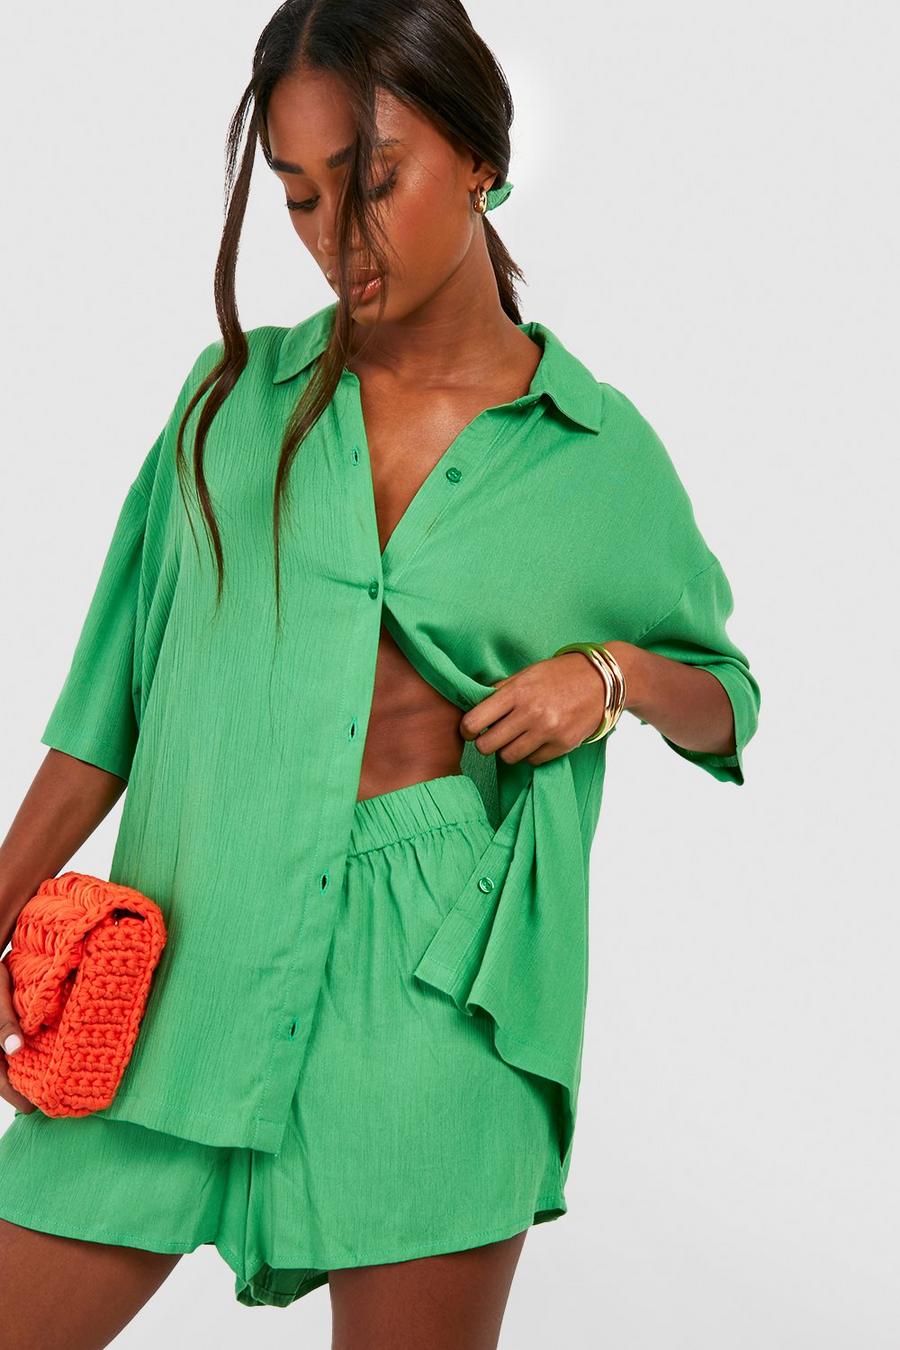 Ensemble texturé avec chemise, short et chouchou, Bright green image number 1